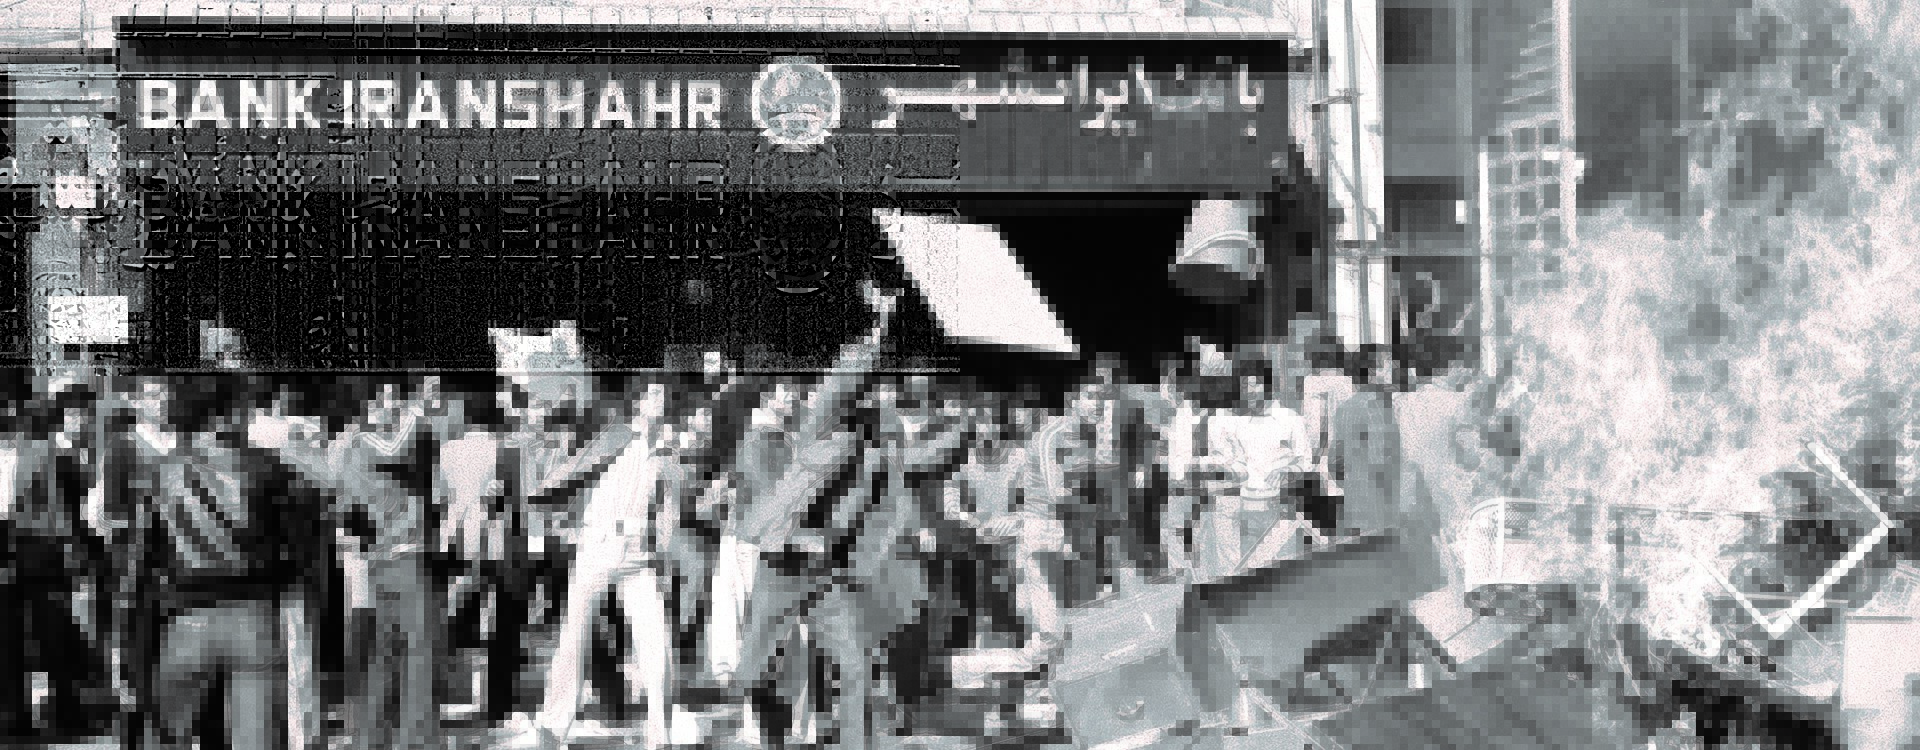 انقلاب 1357 در ایران: انقلابیون خواهان تغییر شهر سلطنتی